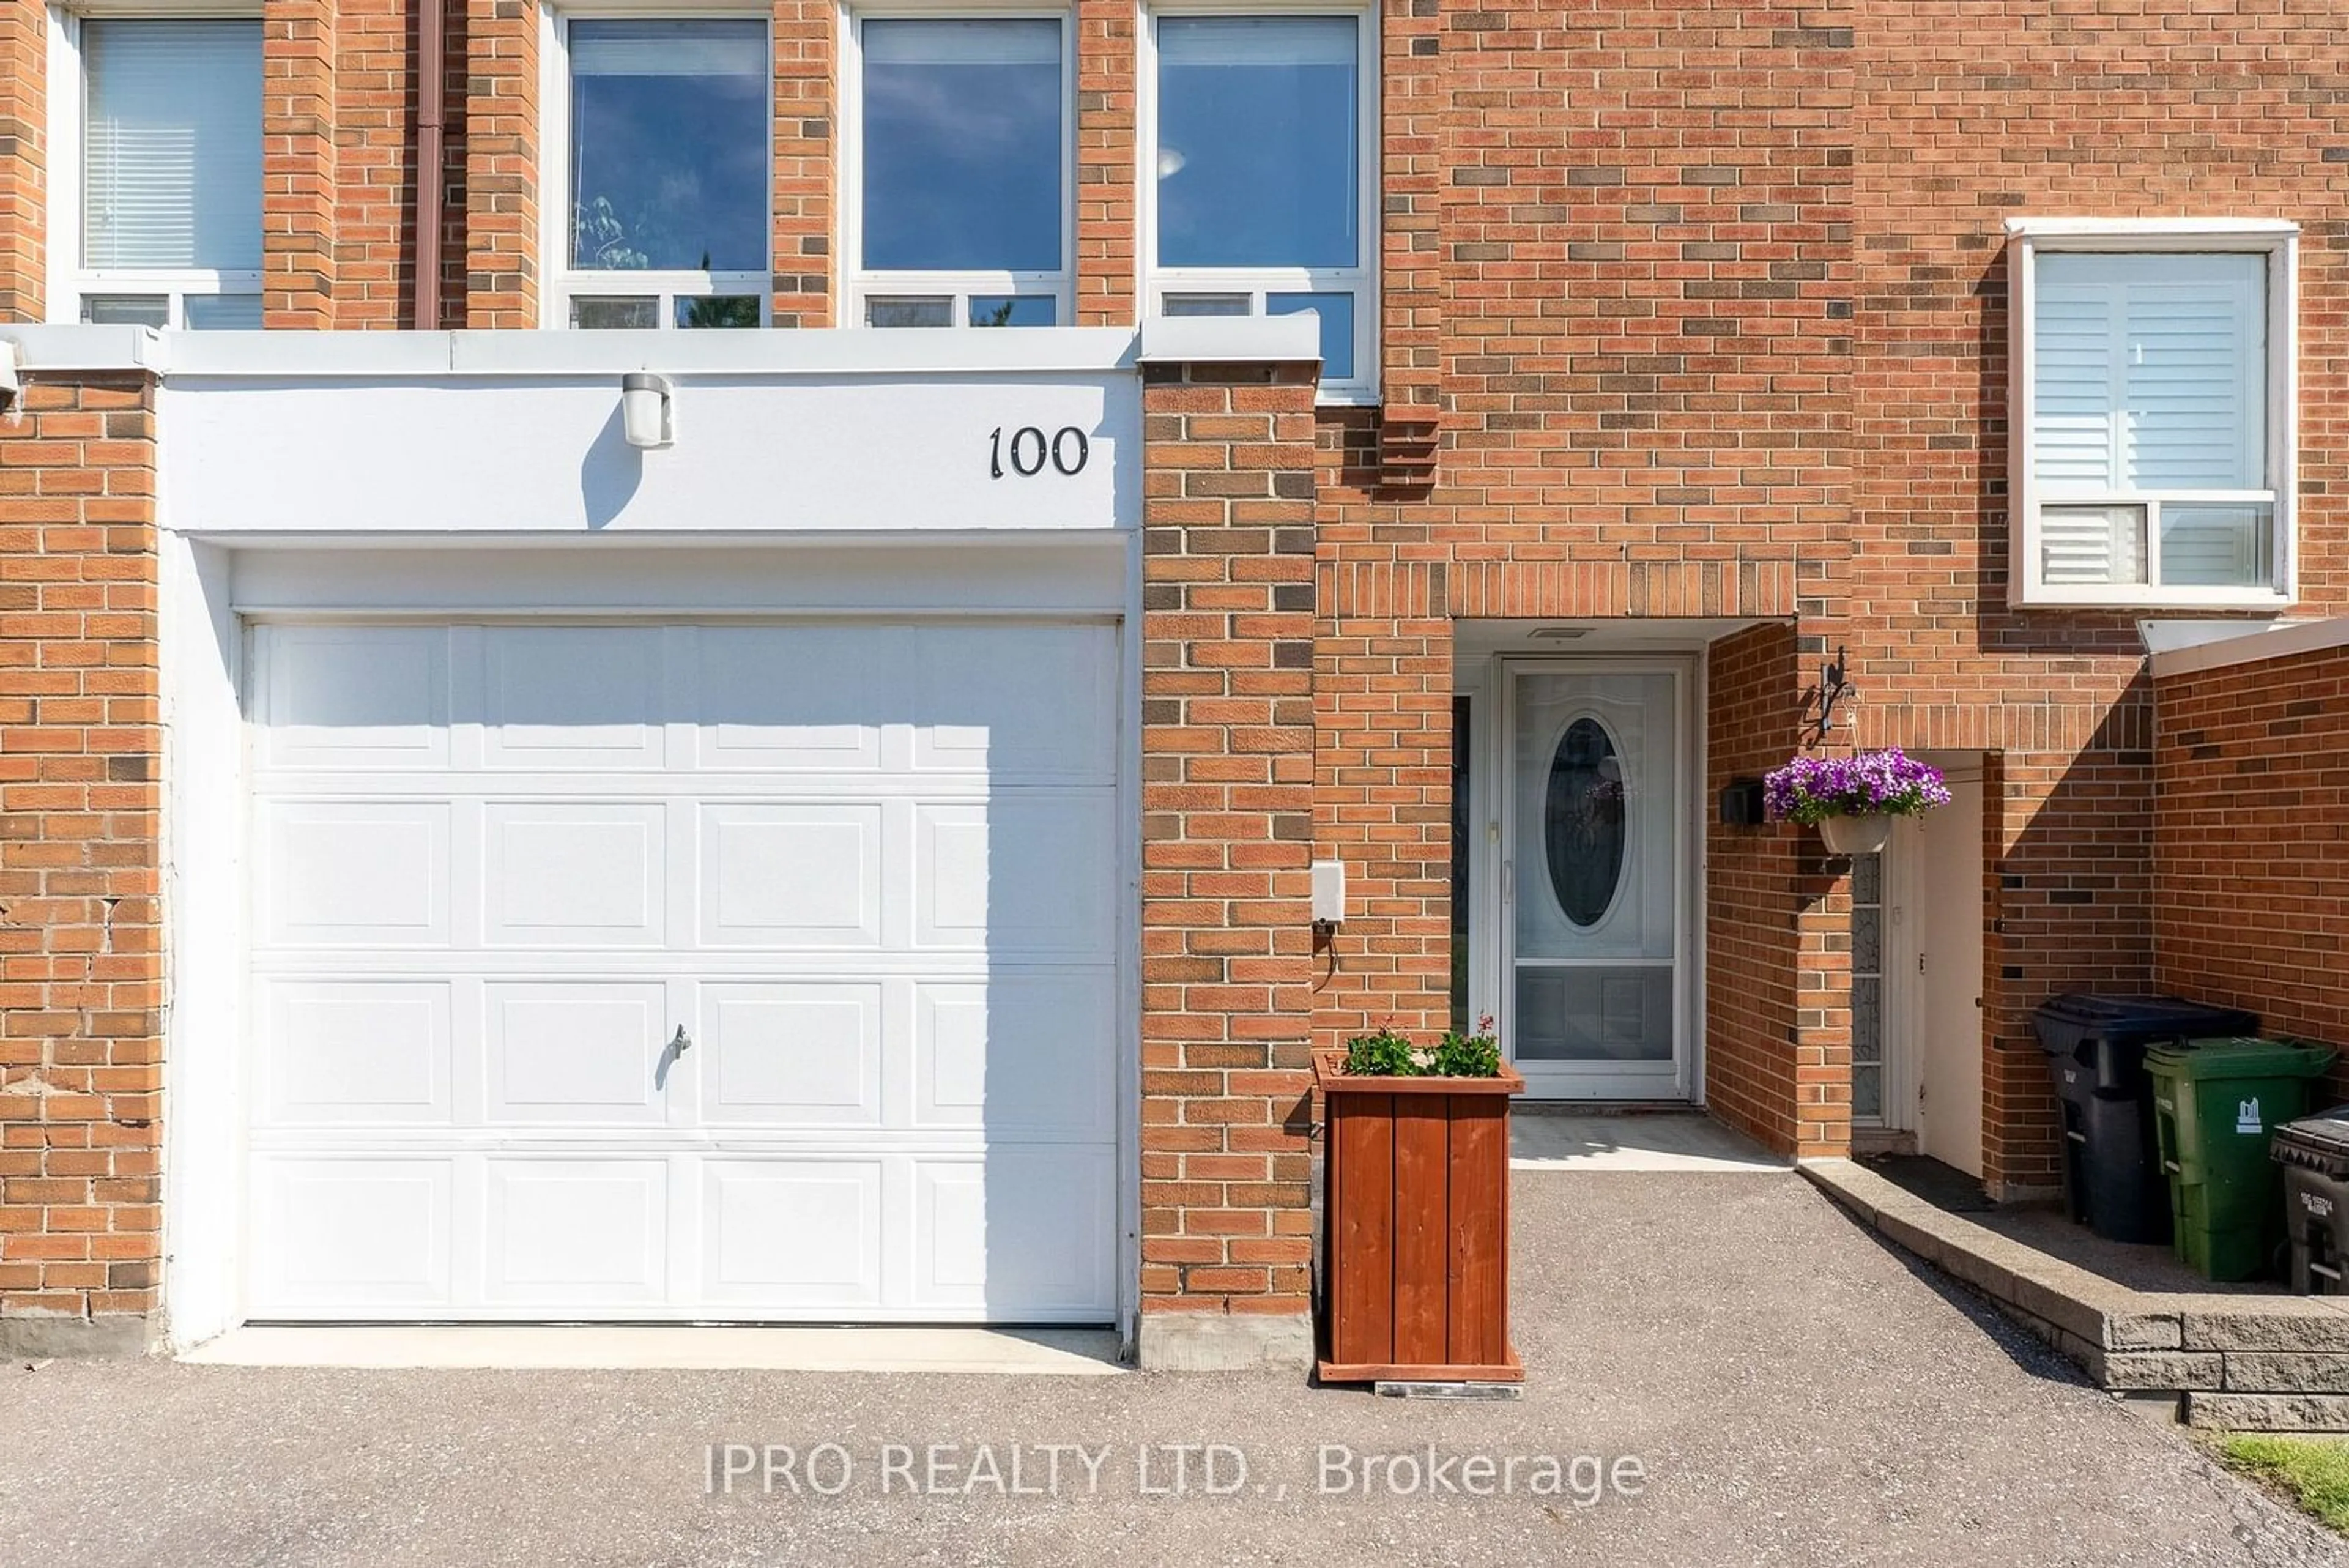 Home with brick exterior material for 1797 Martin Grove Rd #100, Toronto Ontario M9V 3S5